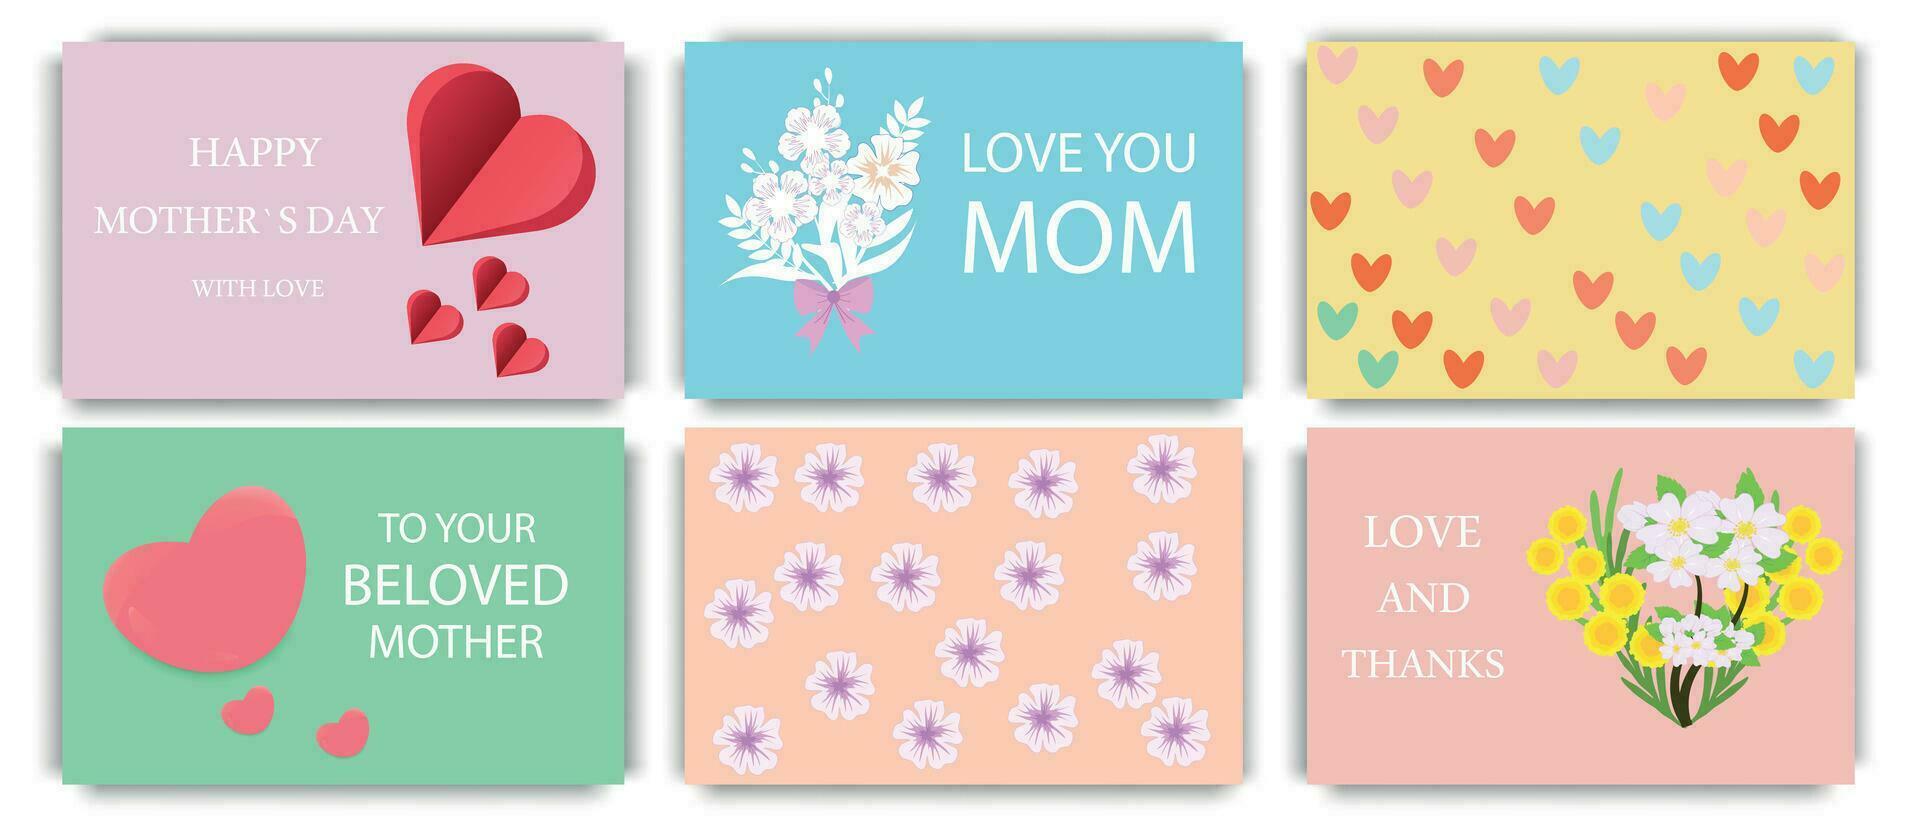 en uppsättning av mödrar dag hälsning kort med buketter av blommor och hjärtan på bakgrunder i säng färger. Semester begrepp. vektor illustration.